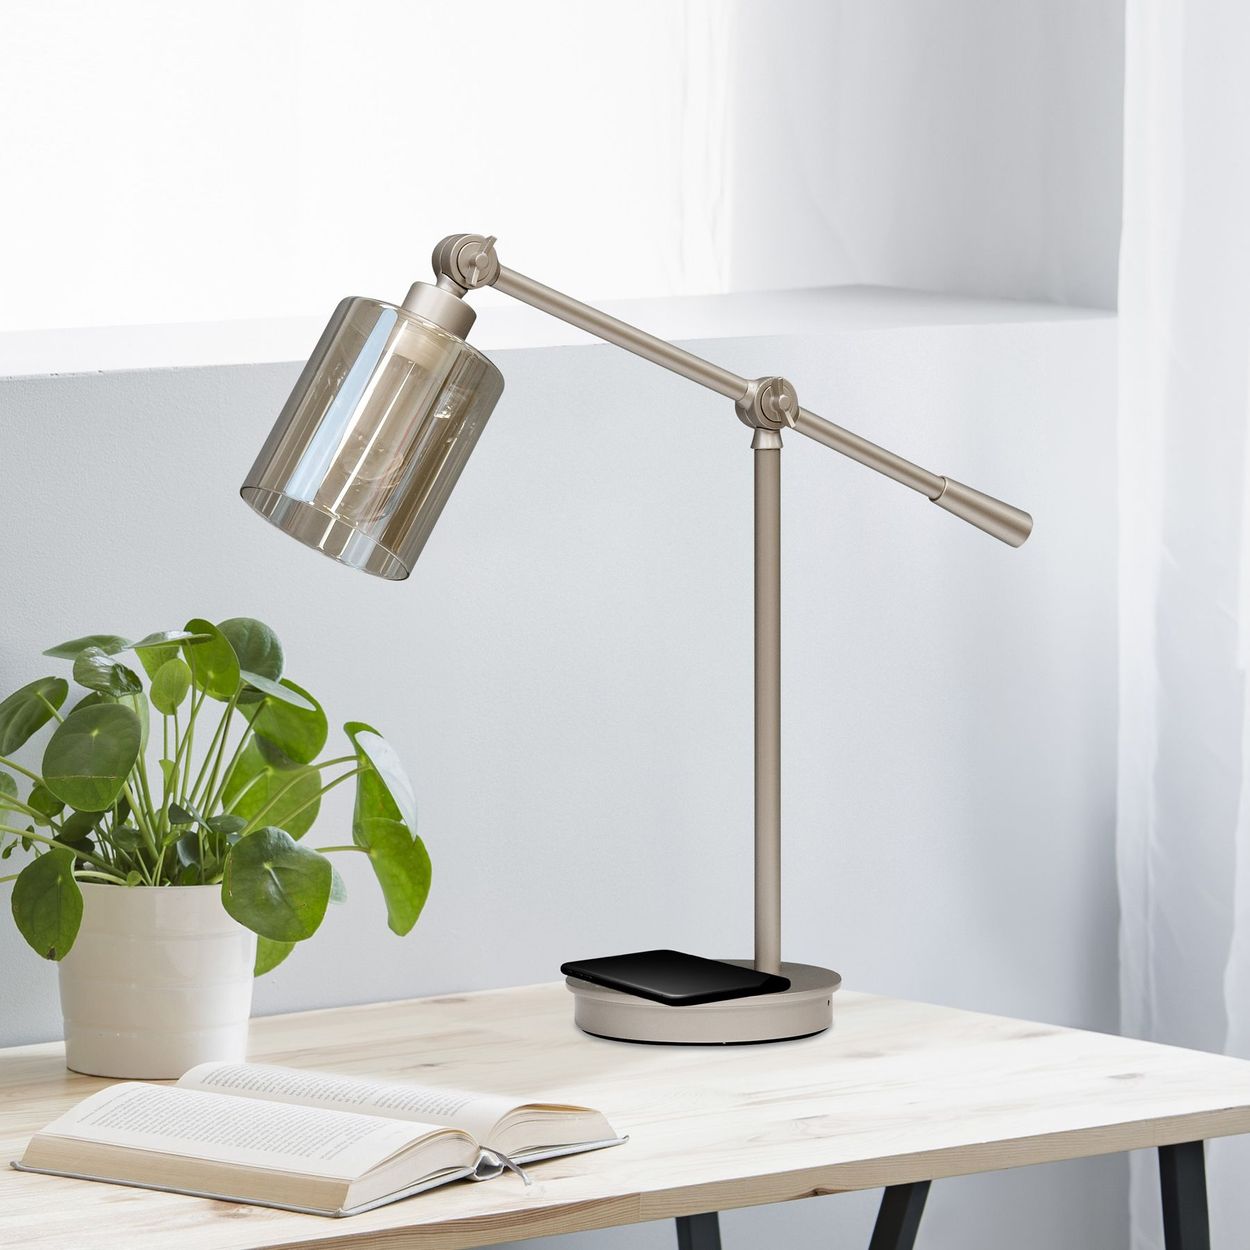 Lifestyle image of the EDISON II LED desk lamp.